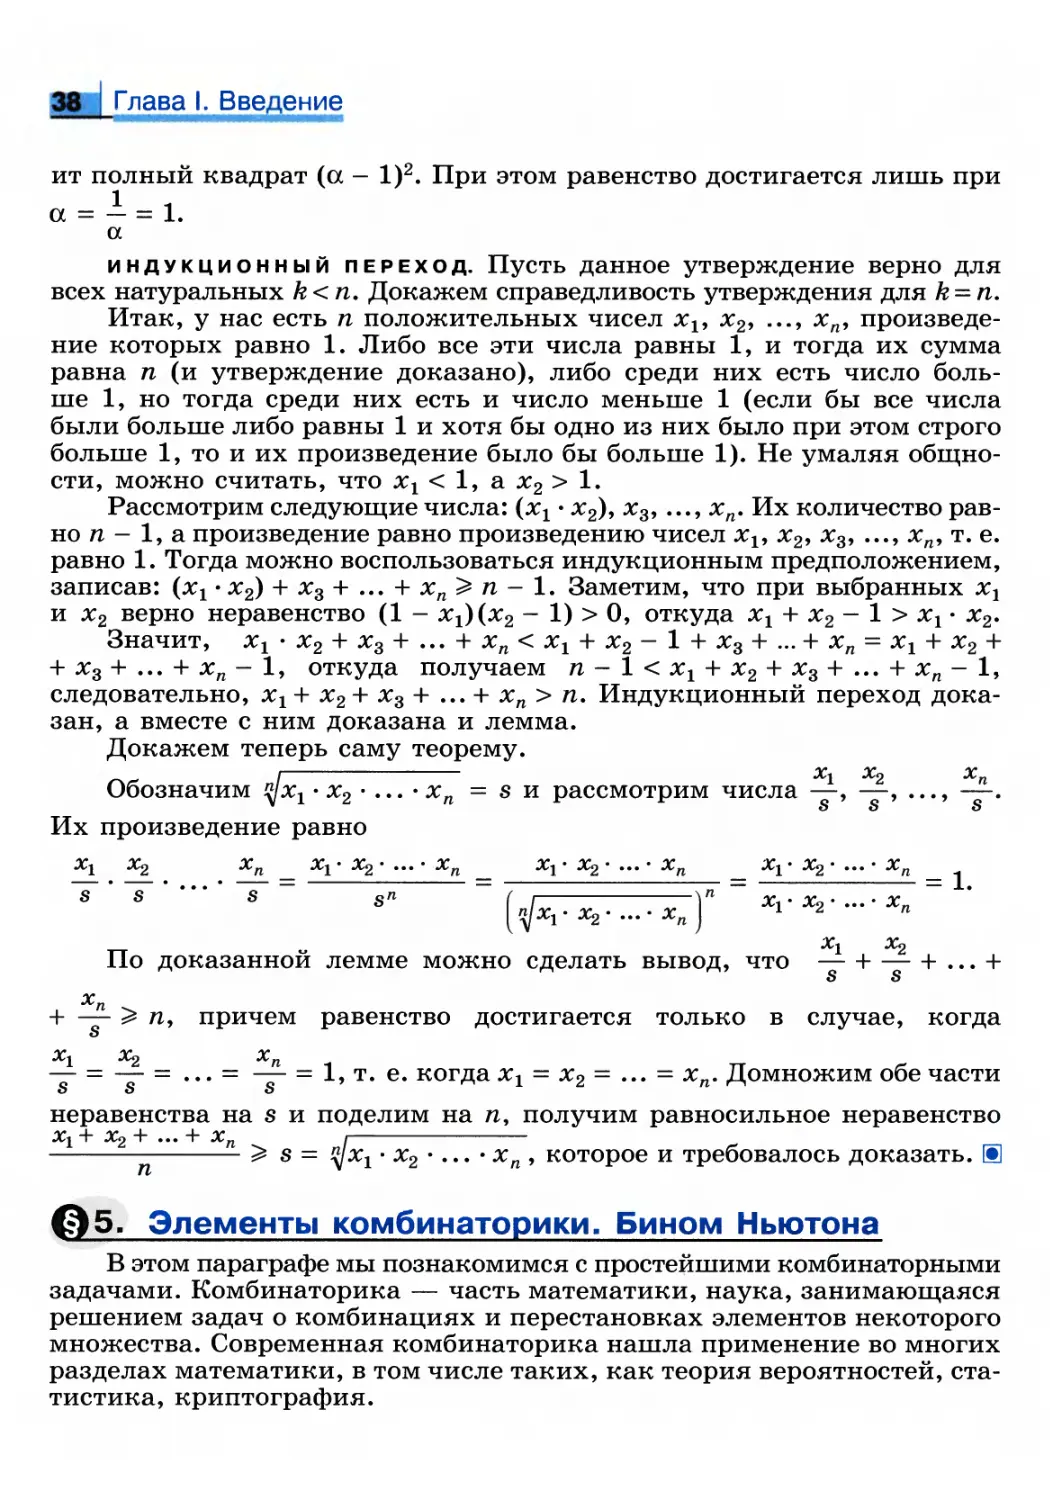 §5. Элементы комбинаторики. Бином Ньютона